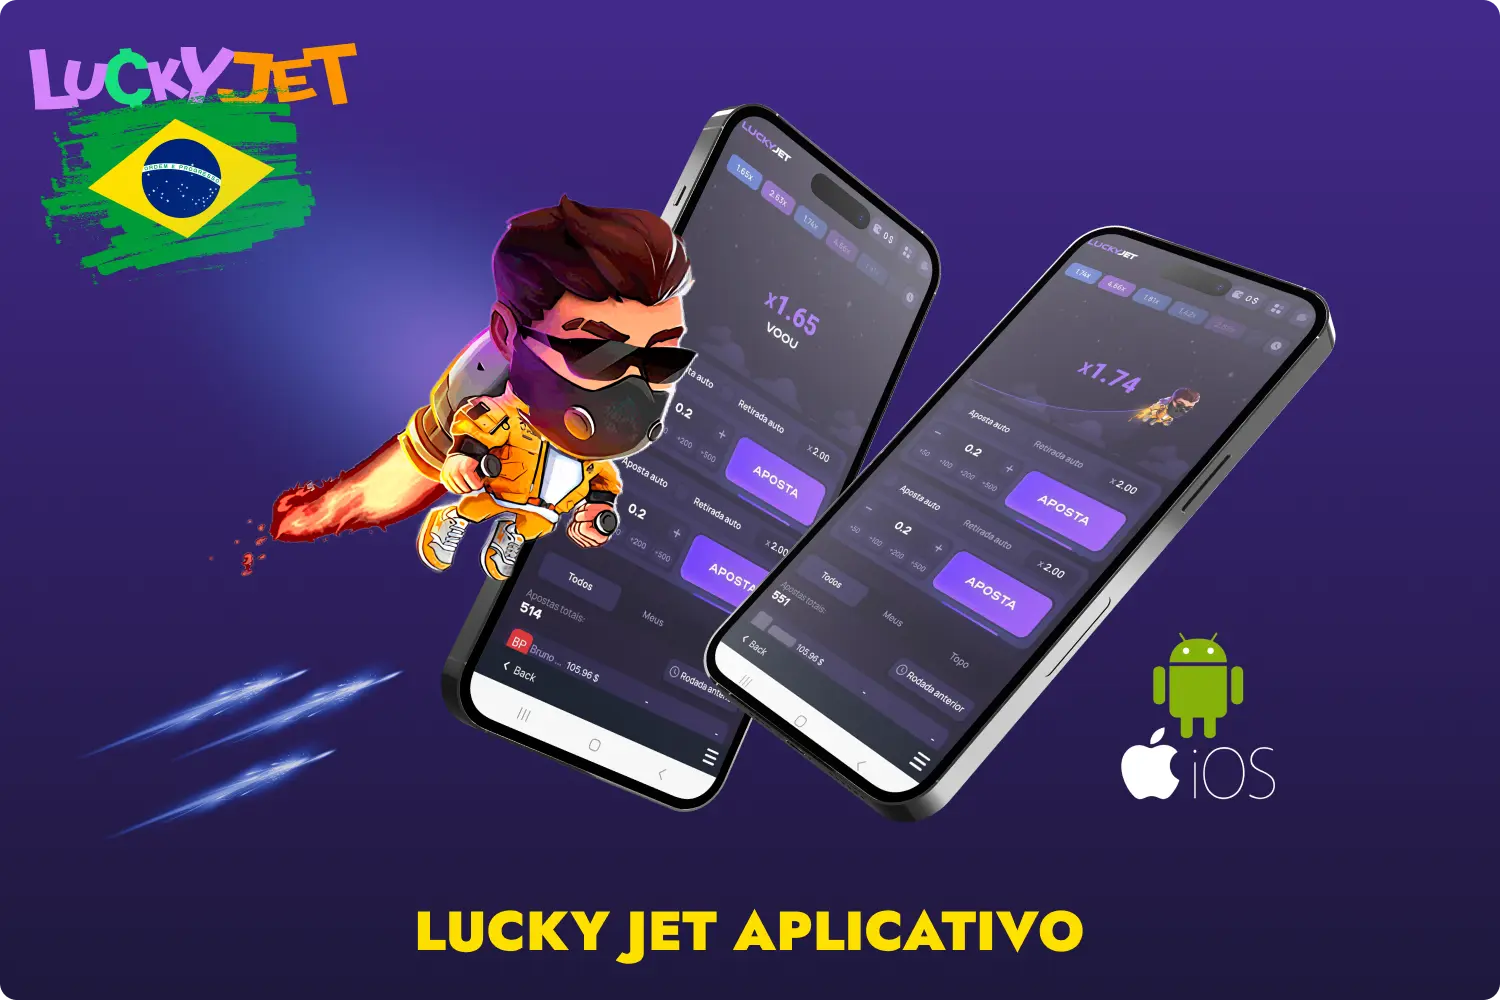 No casino online Lucky Jet 1win, qualquer jogador brasileiro pode acessar o aplicativo móvel gratuitamente e usá-lo para jogar no Lucky Jet em qualquer lugar